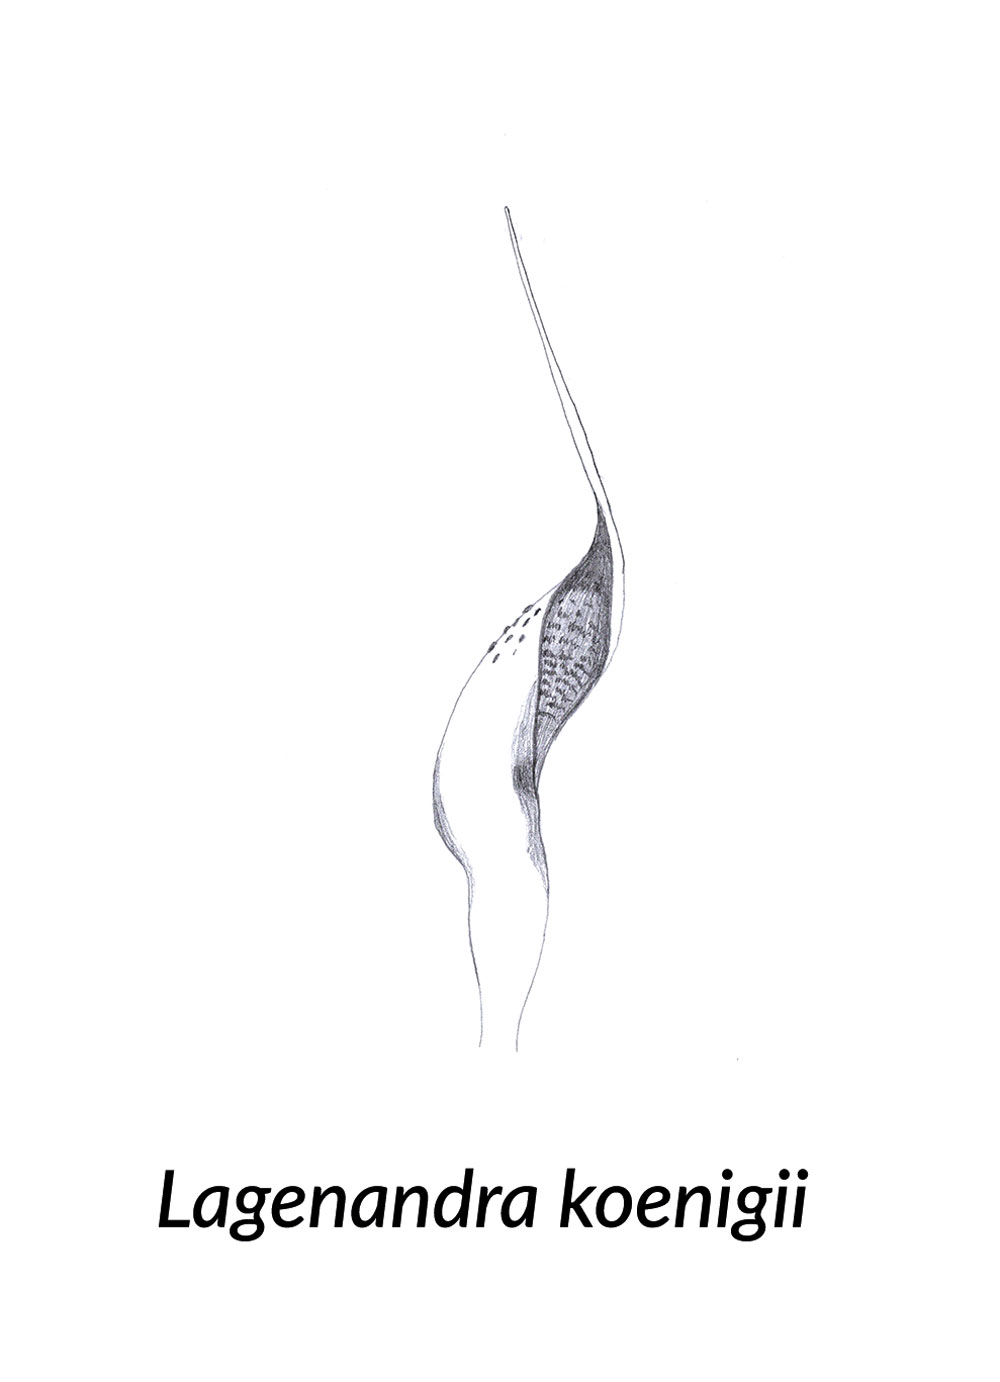 Skizze einer Spatha von Lagenandra koenigii